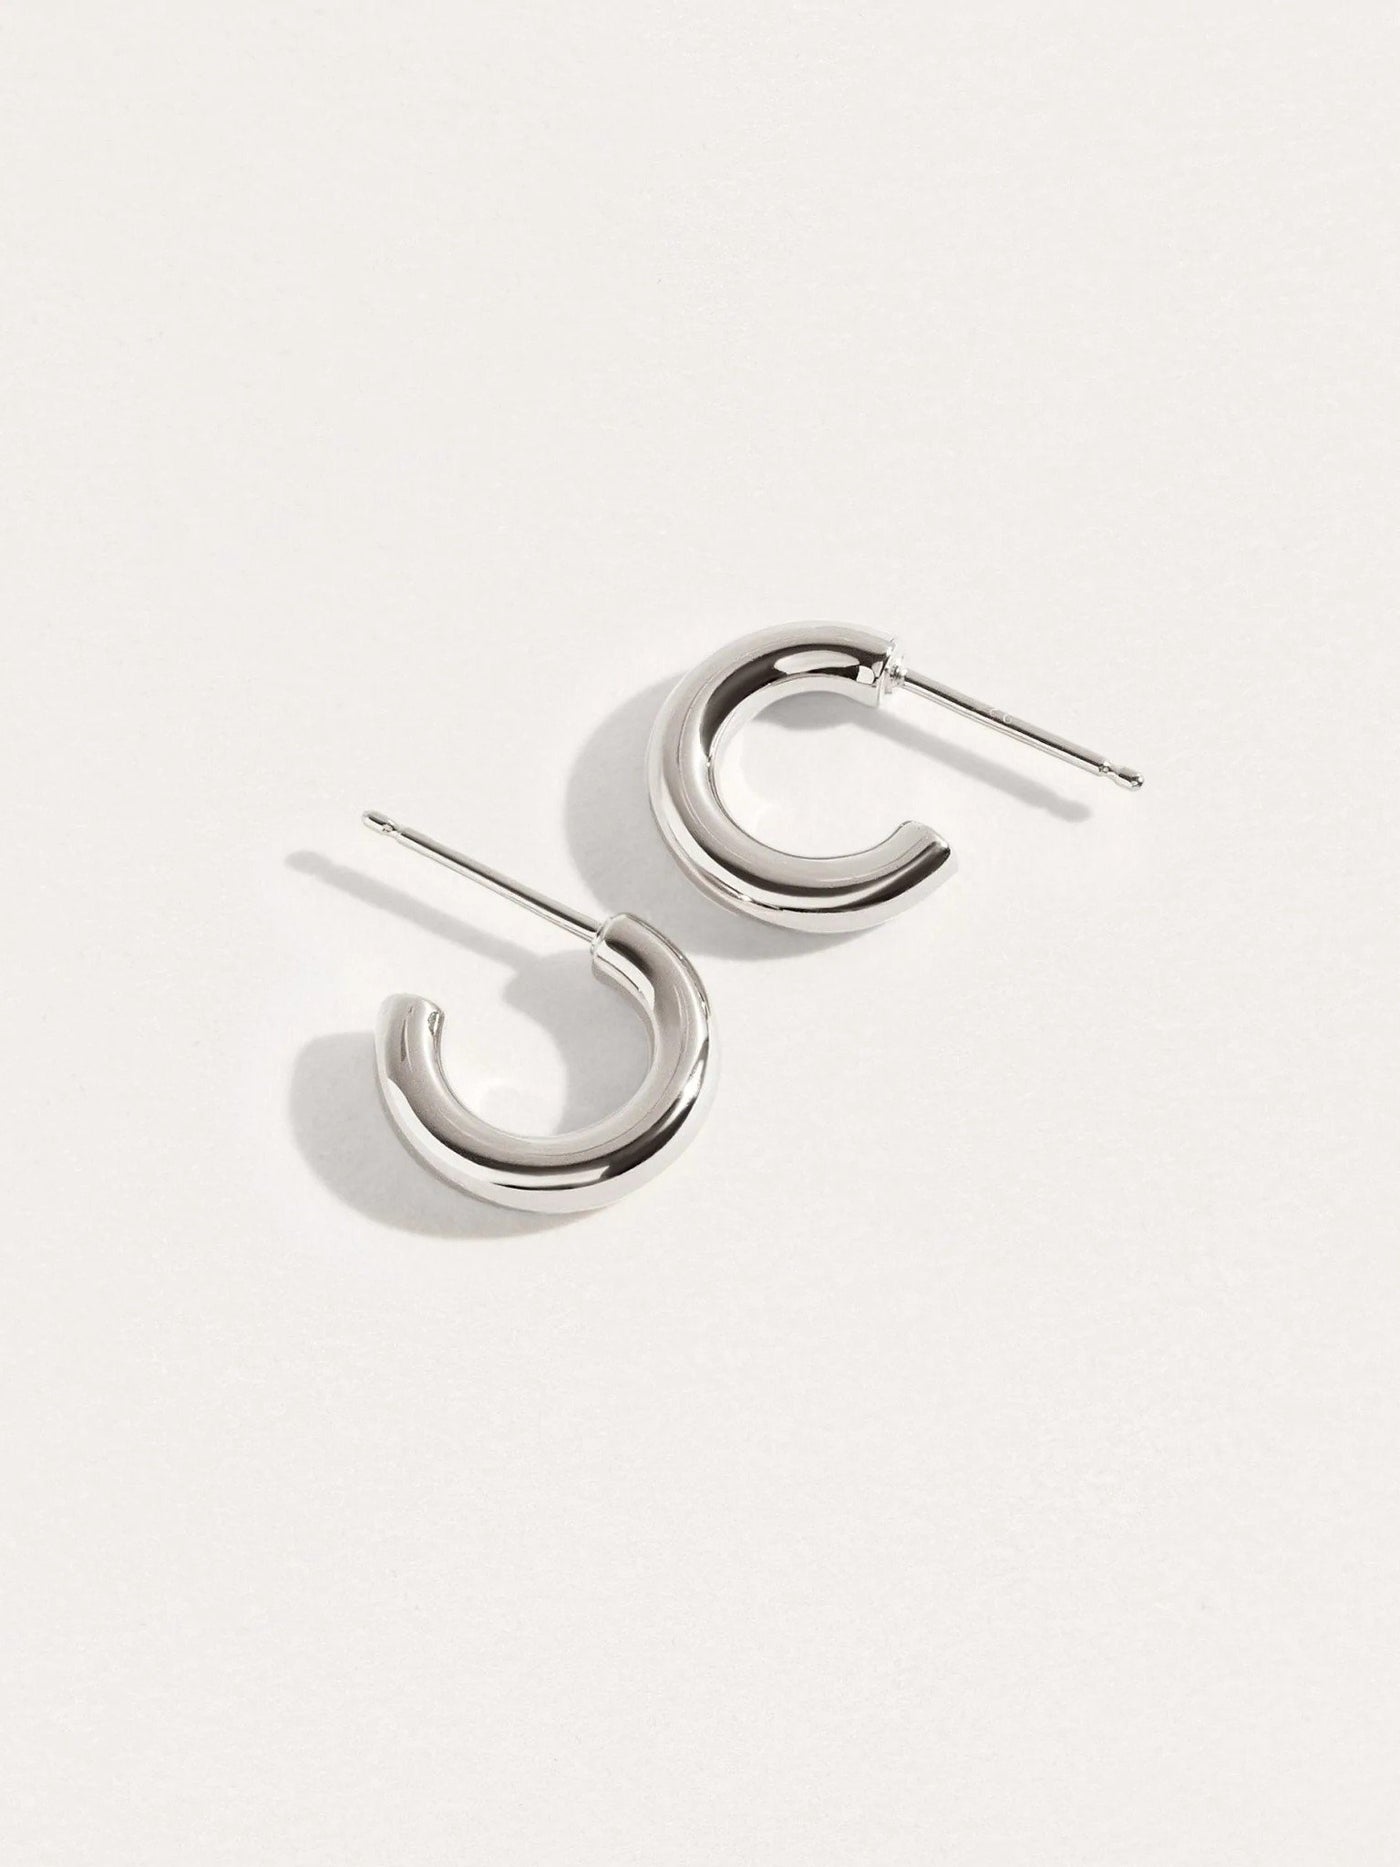 Biblya Hoop Earrings - 925 Sterling SilverankorBackUpItemsLunai Jewelry